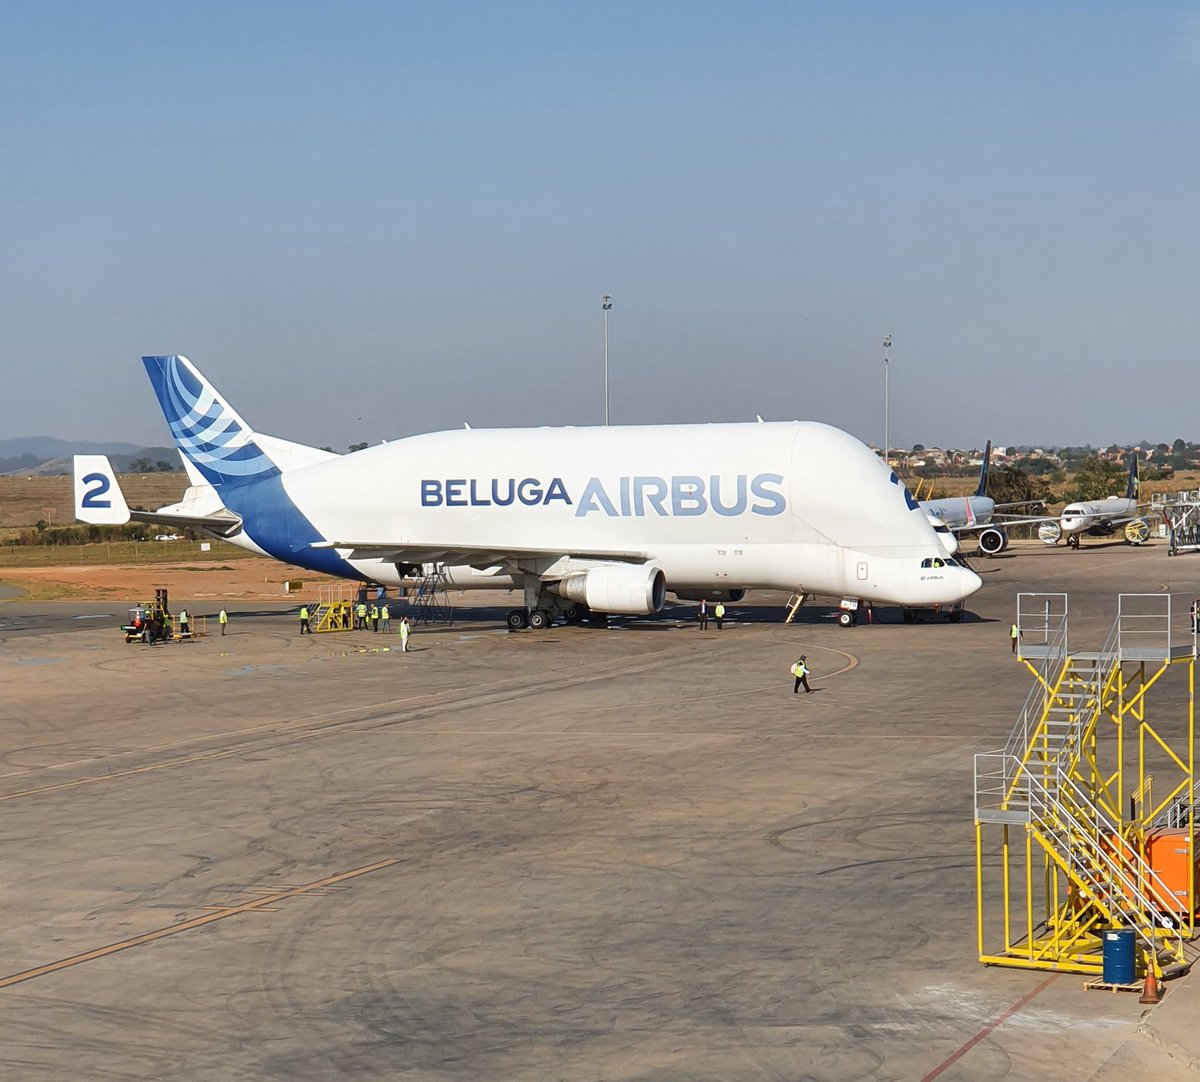 Muito fofo o beluga 🥰 @Airbus